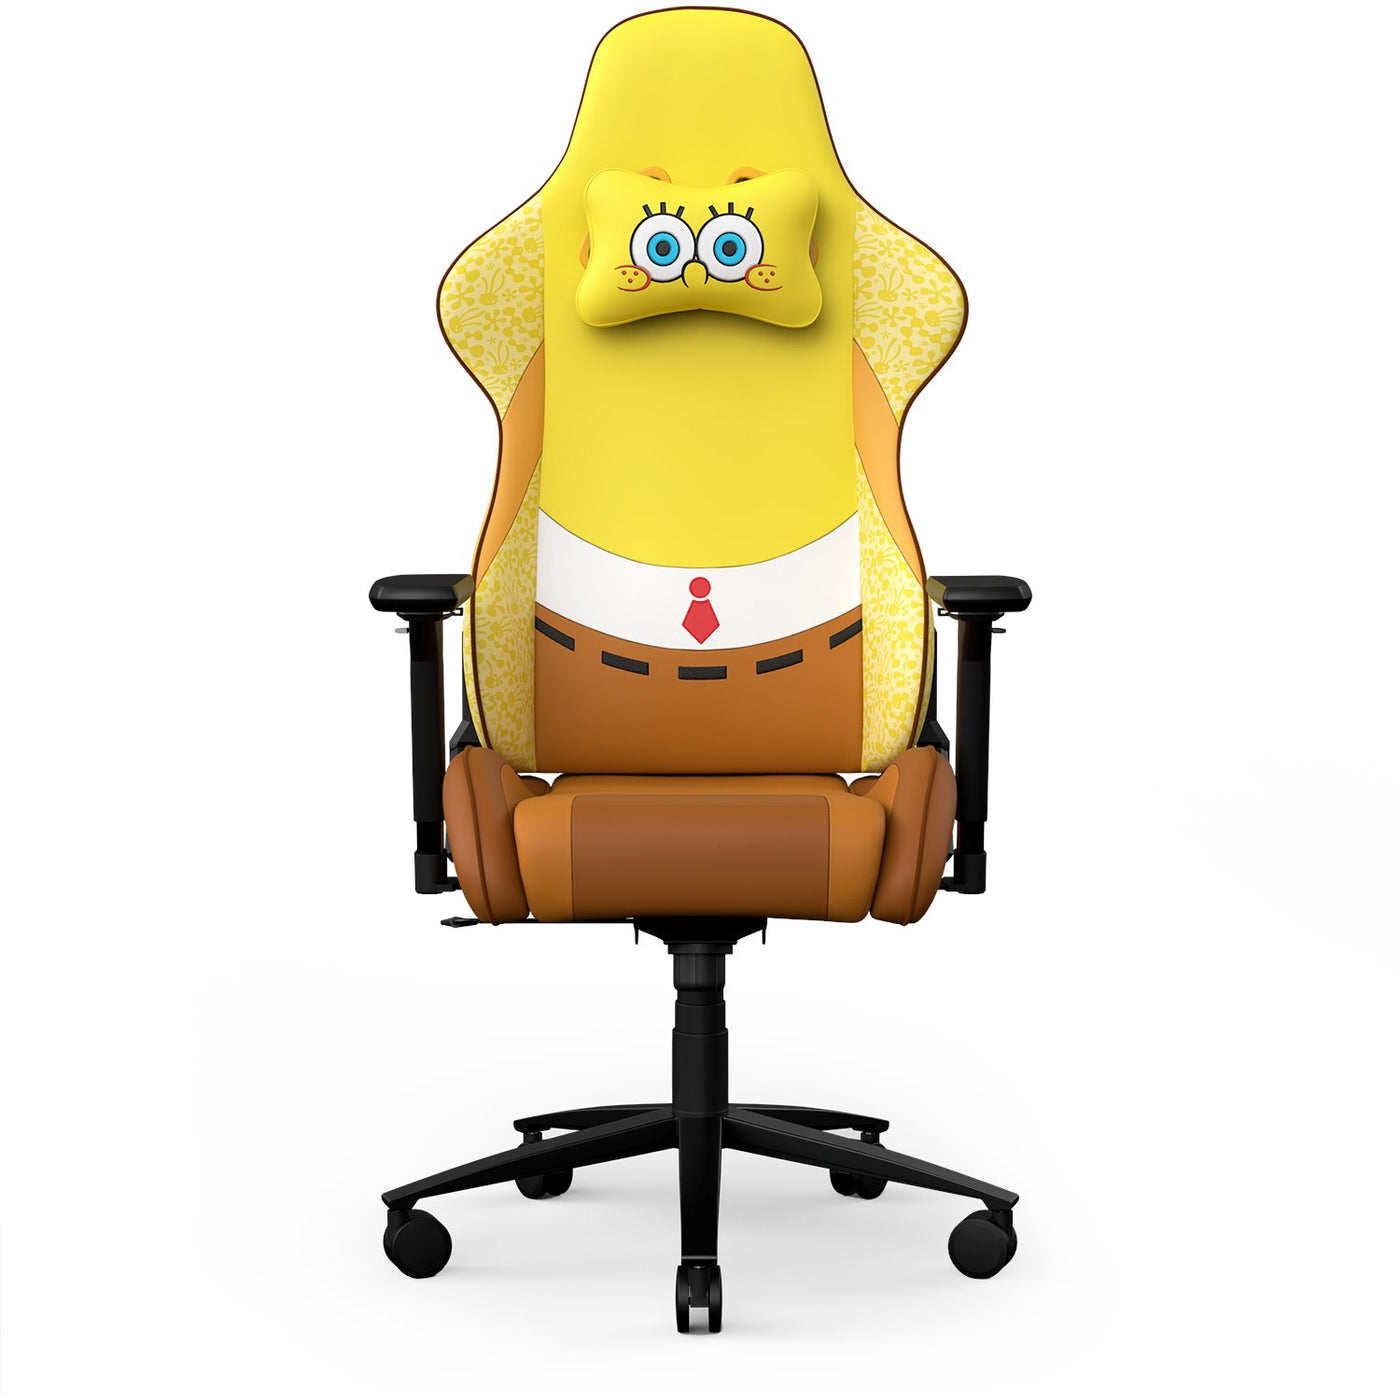 SpongeBob G1 Gaming Chair | Ghost Keyboards Edition Gaming Chair Clutch Chairz SpongeBob 